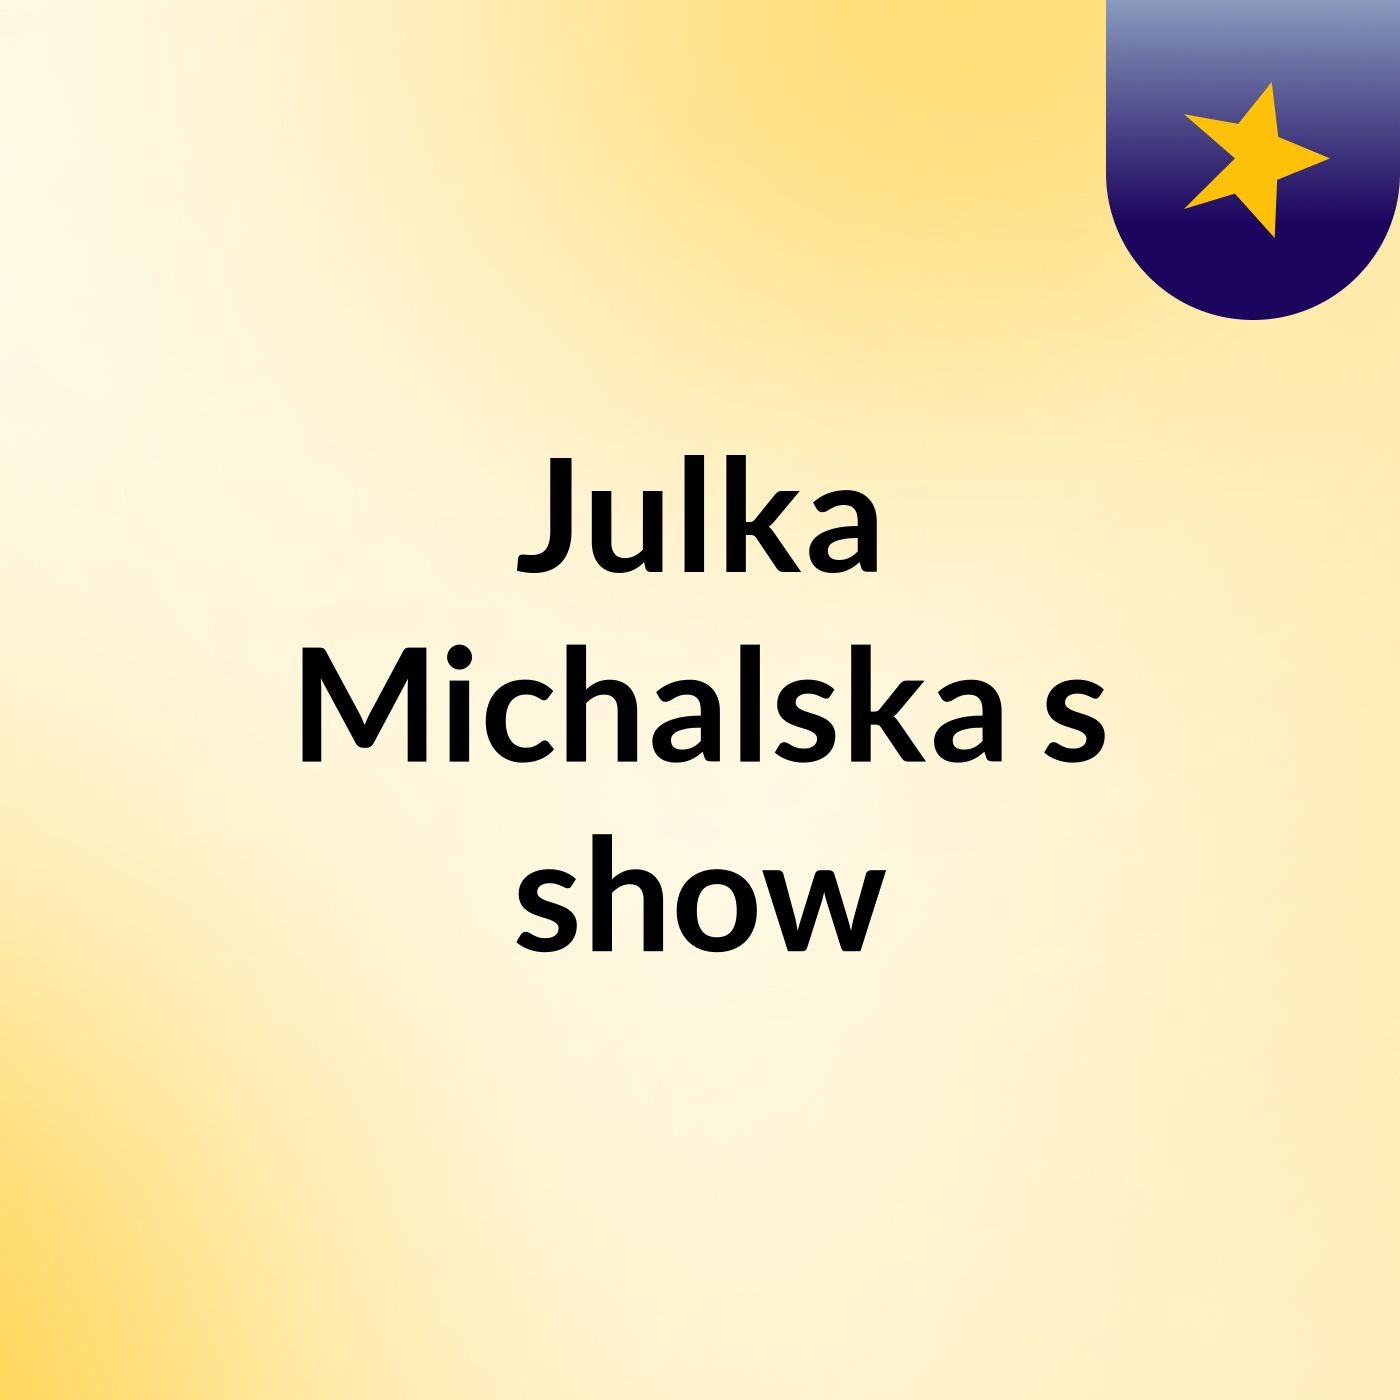 Julka Michalska's show